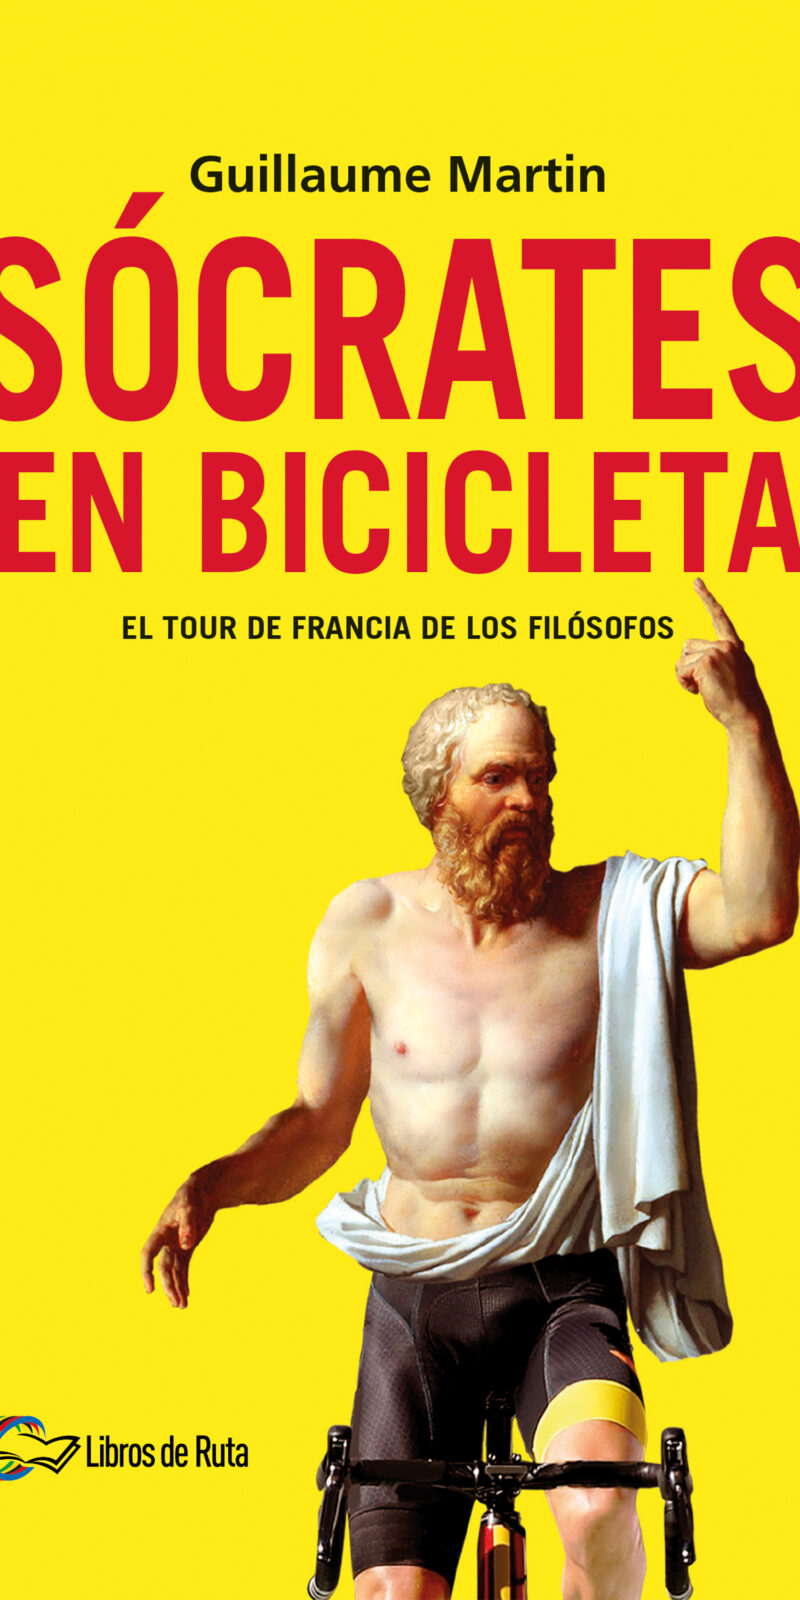 Sócrates en bicicleta El Tour de Francia de los filósofos